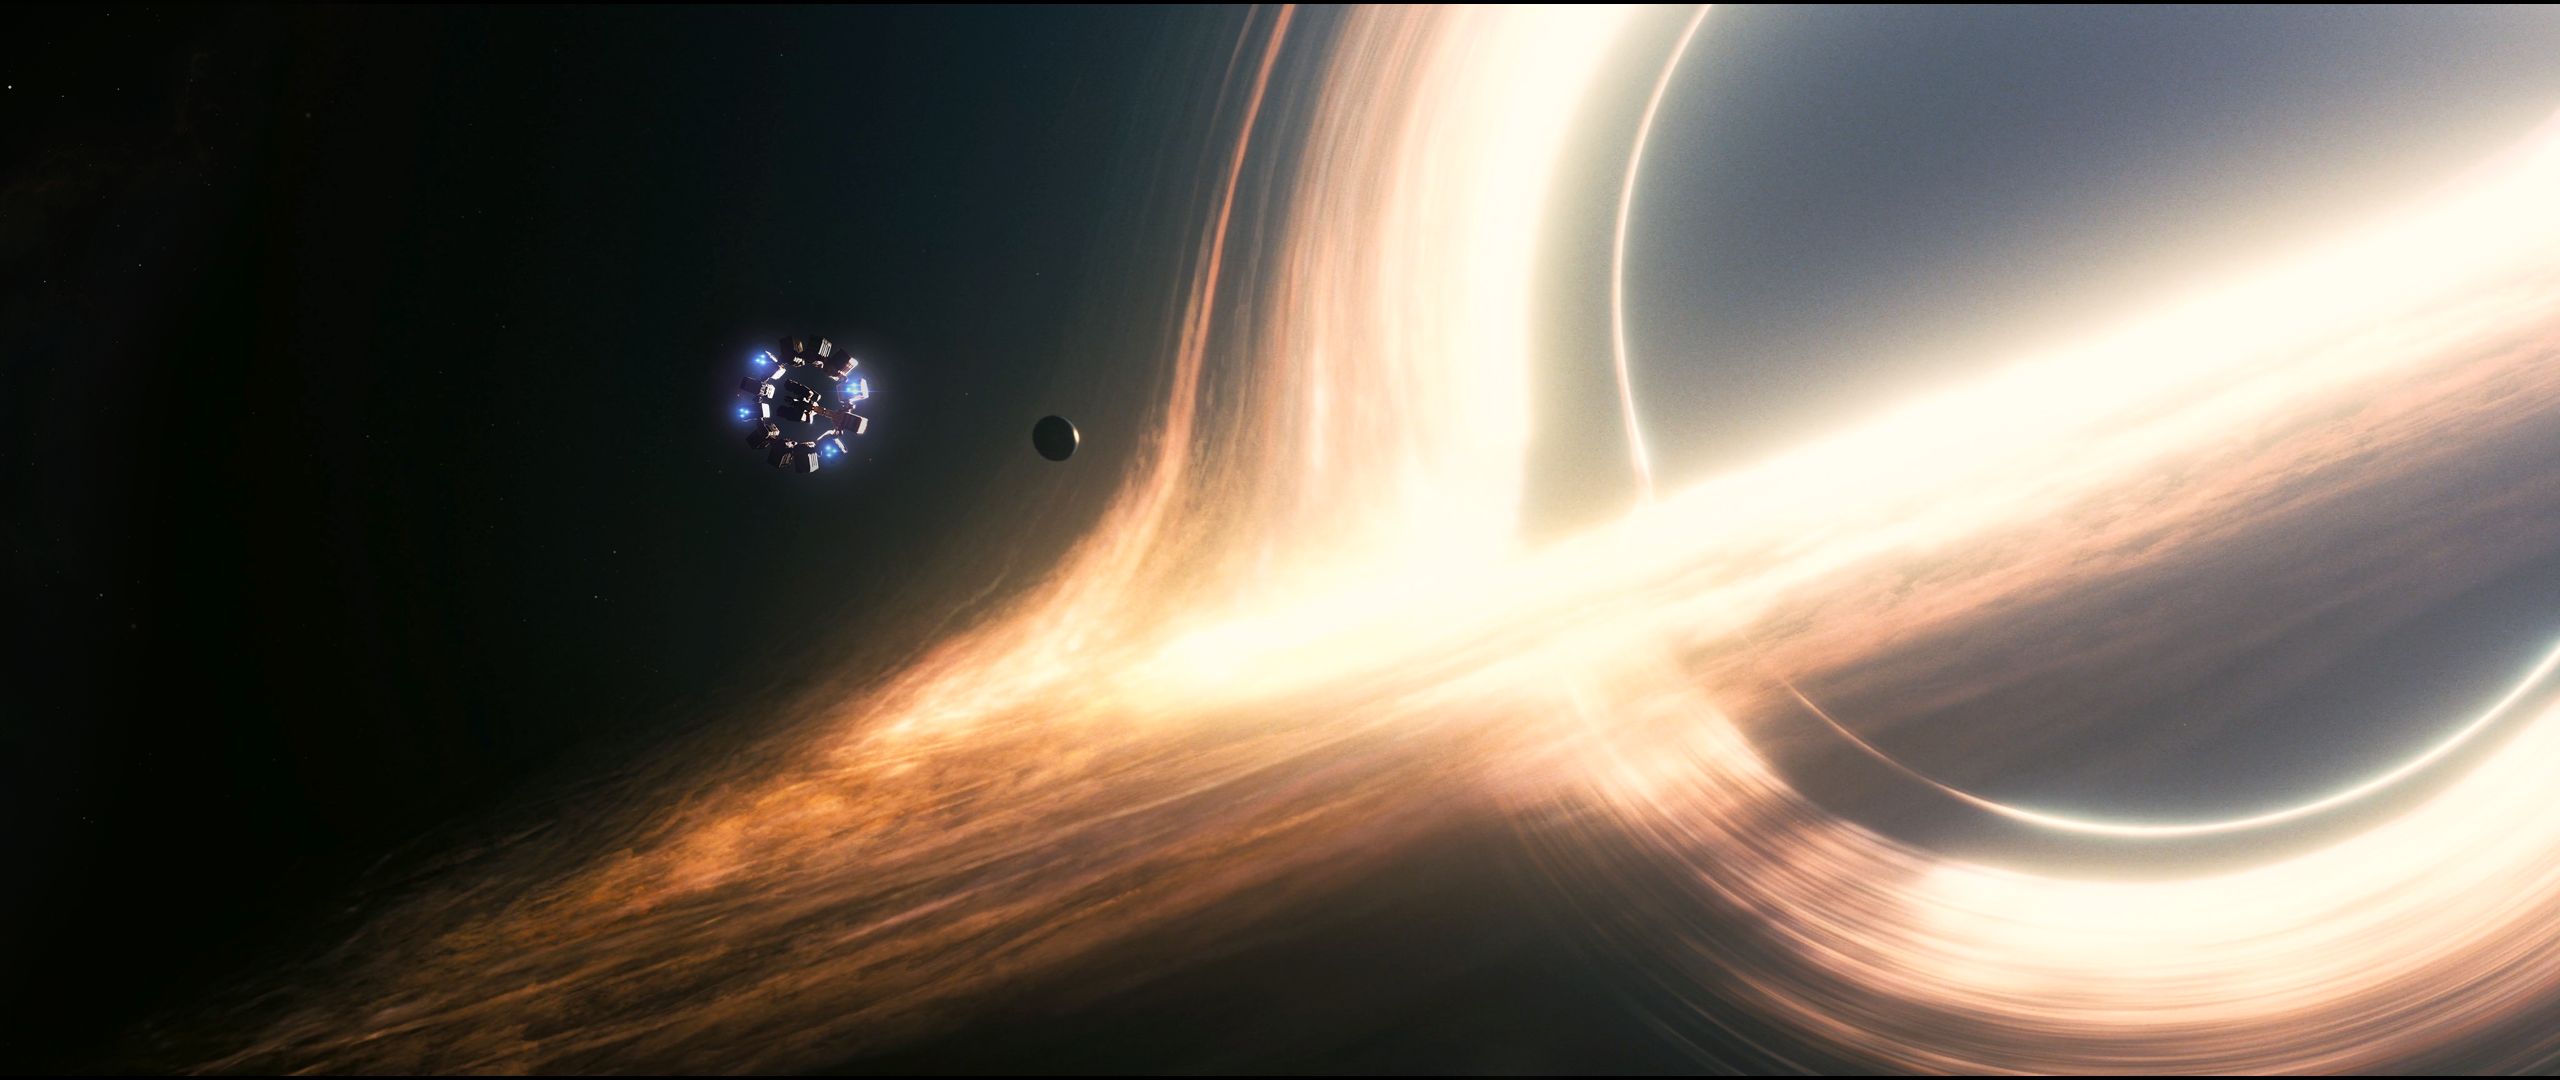 black hole, interstellar, movie cellphone